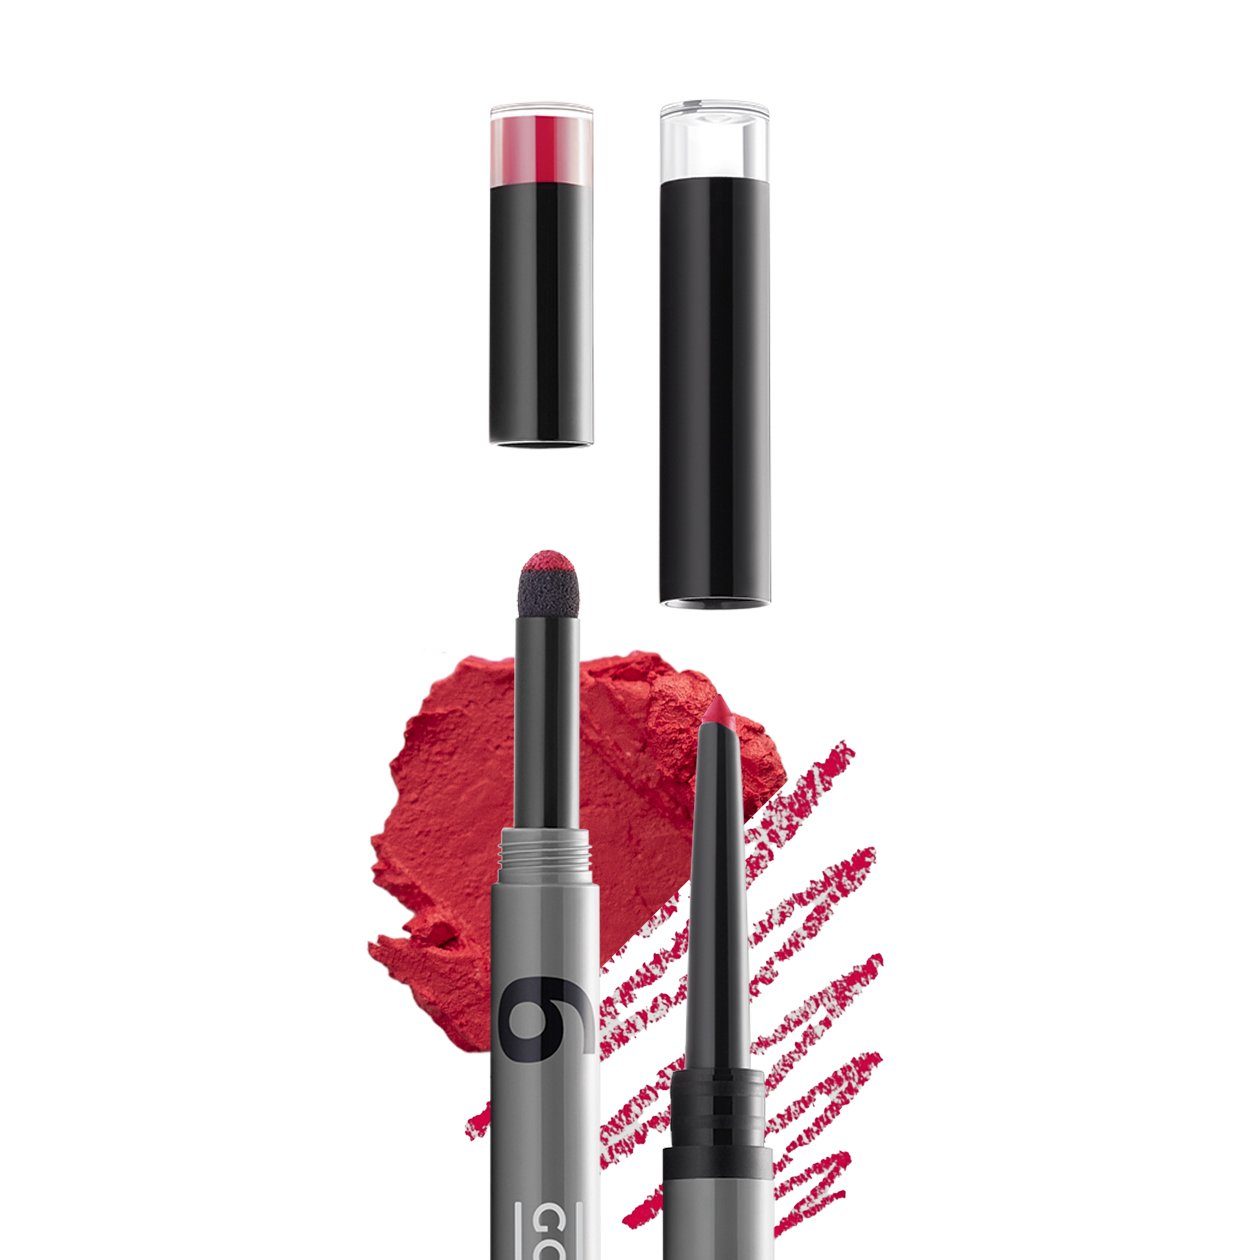 Gokos Lippenstift LipDesigner, für perfekt definierte Lippen heat wave 6703 - Ein intensives, leicht kühles, sattes Rot, mit farblich passendem Lipliner.